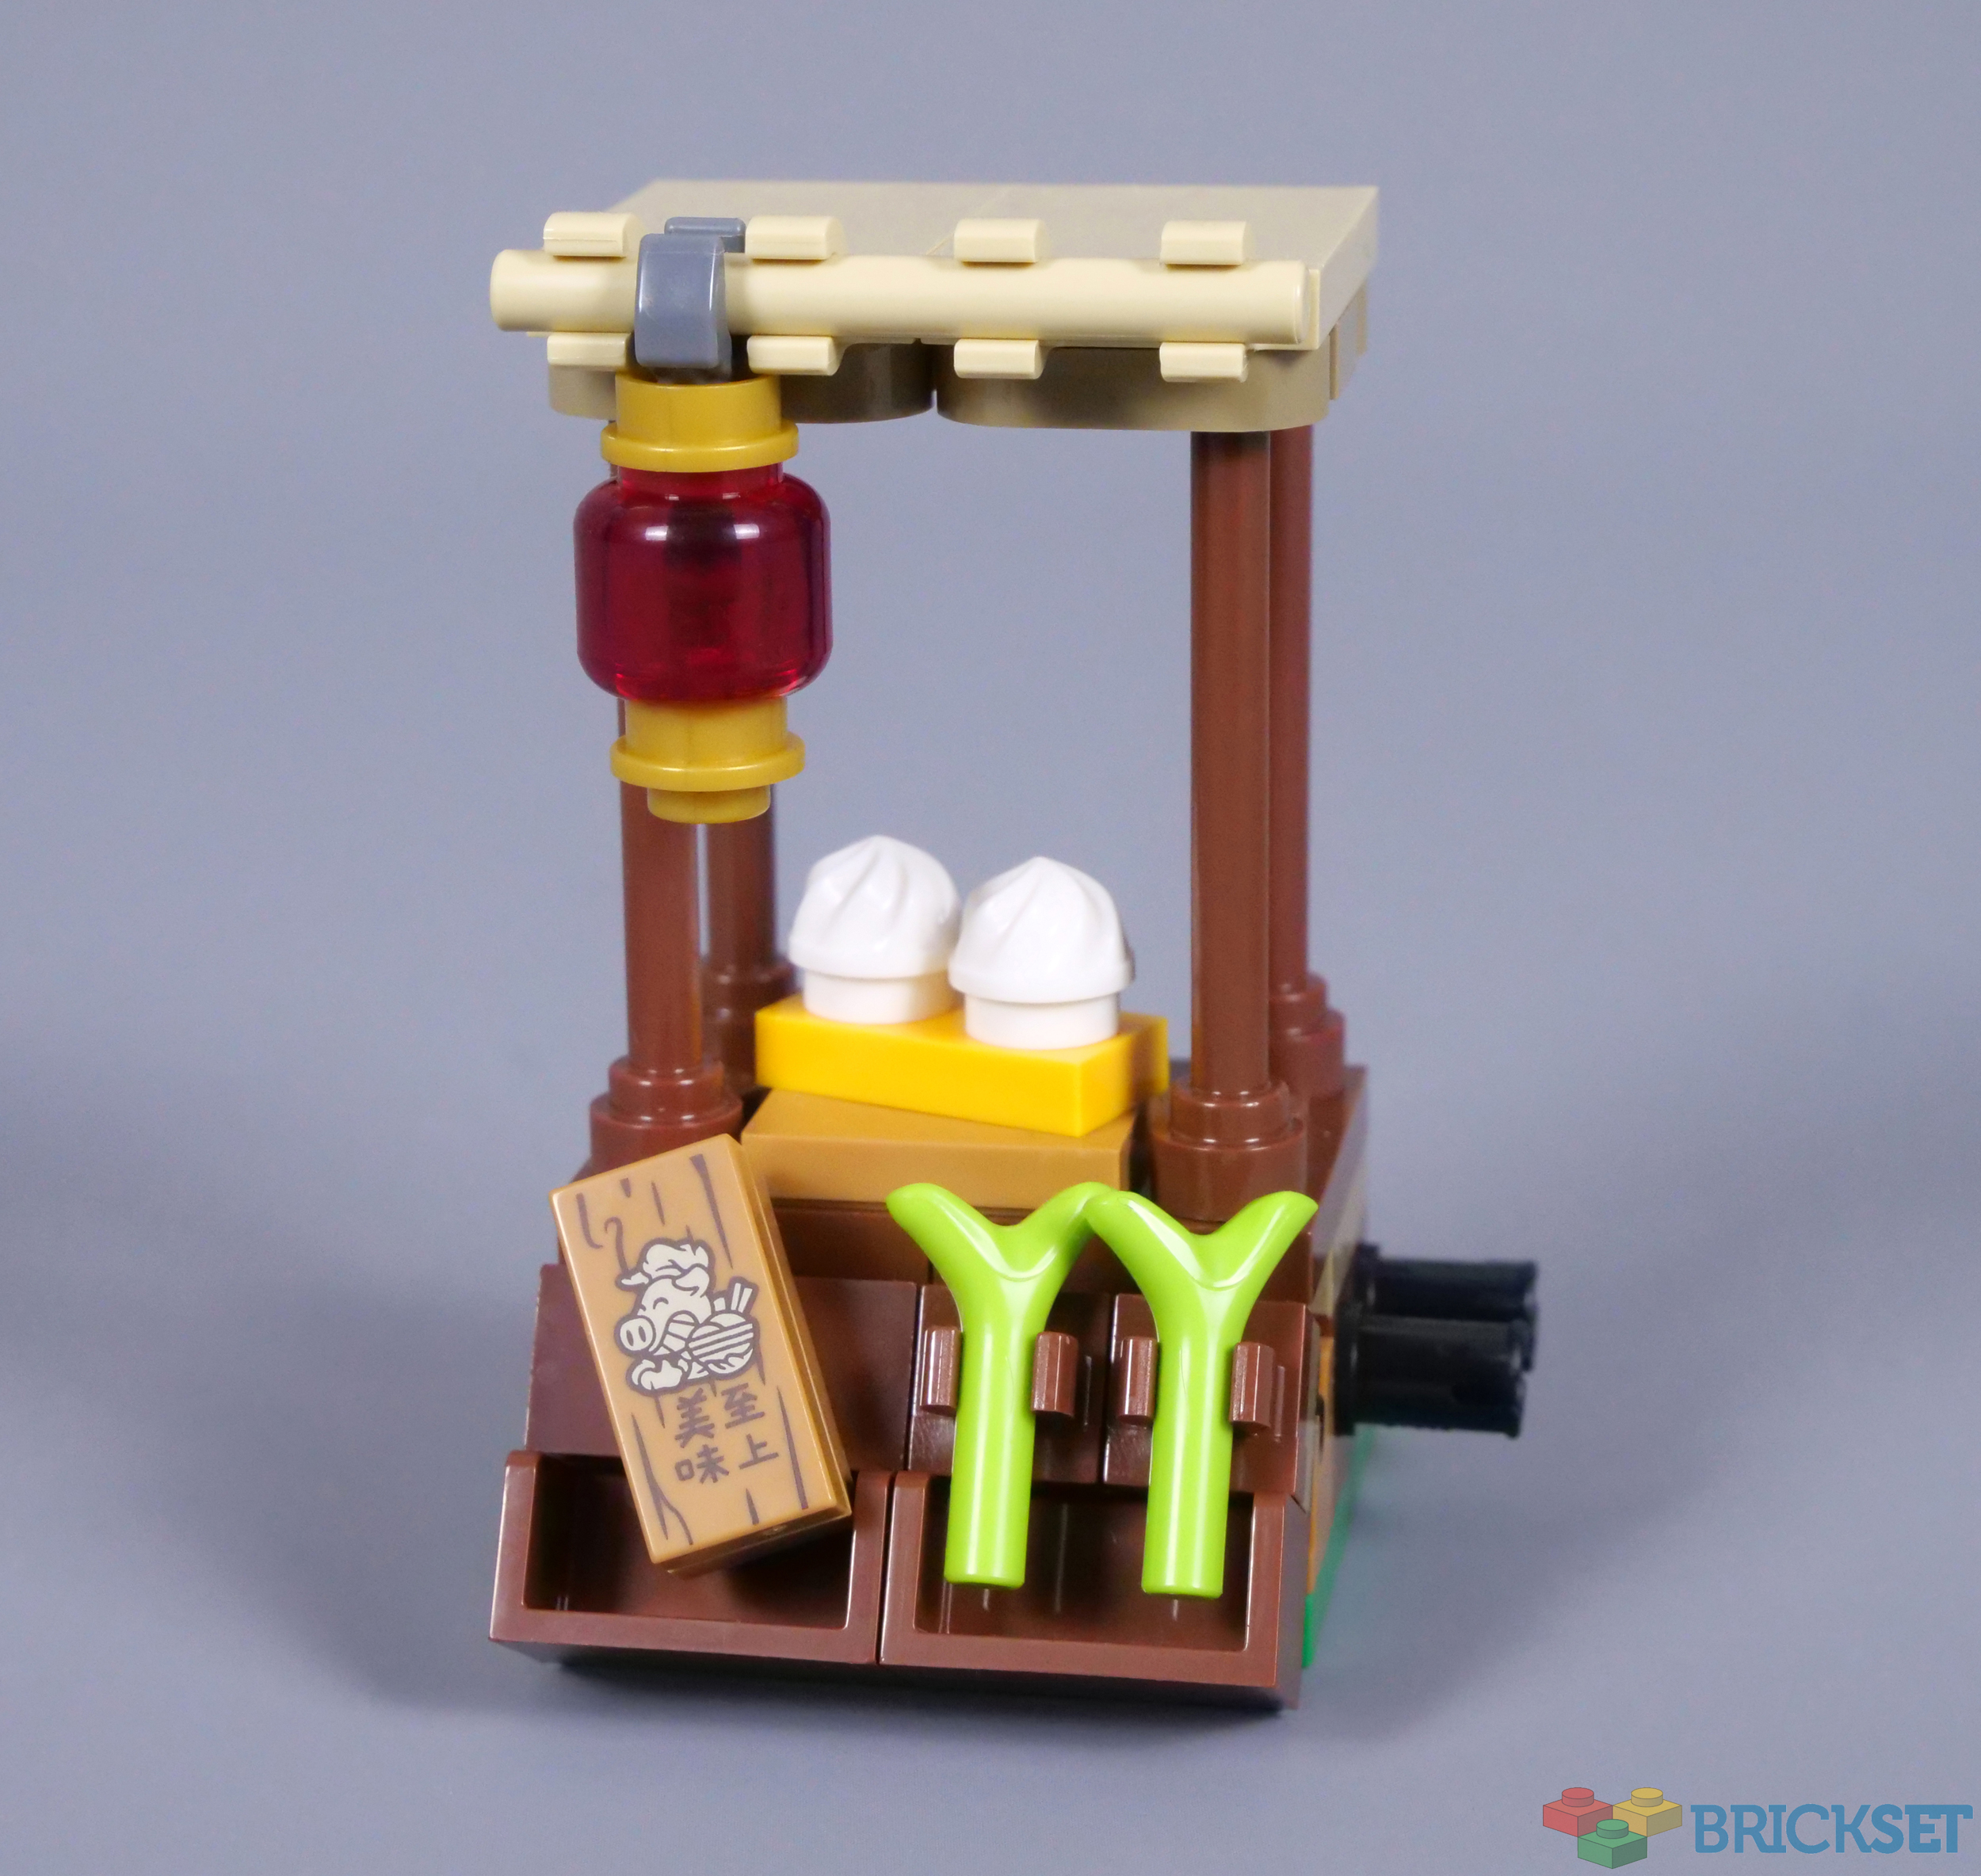 LEGO Monkie Kid: Monkey King Marketplace 